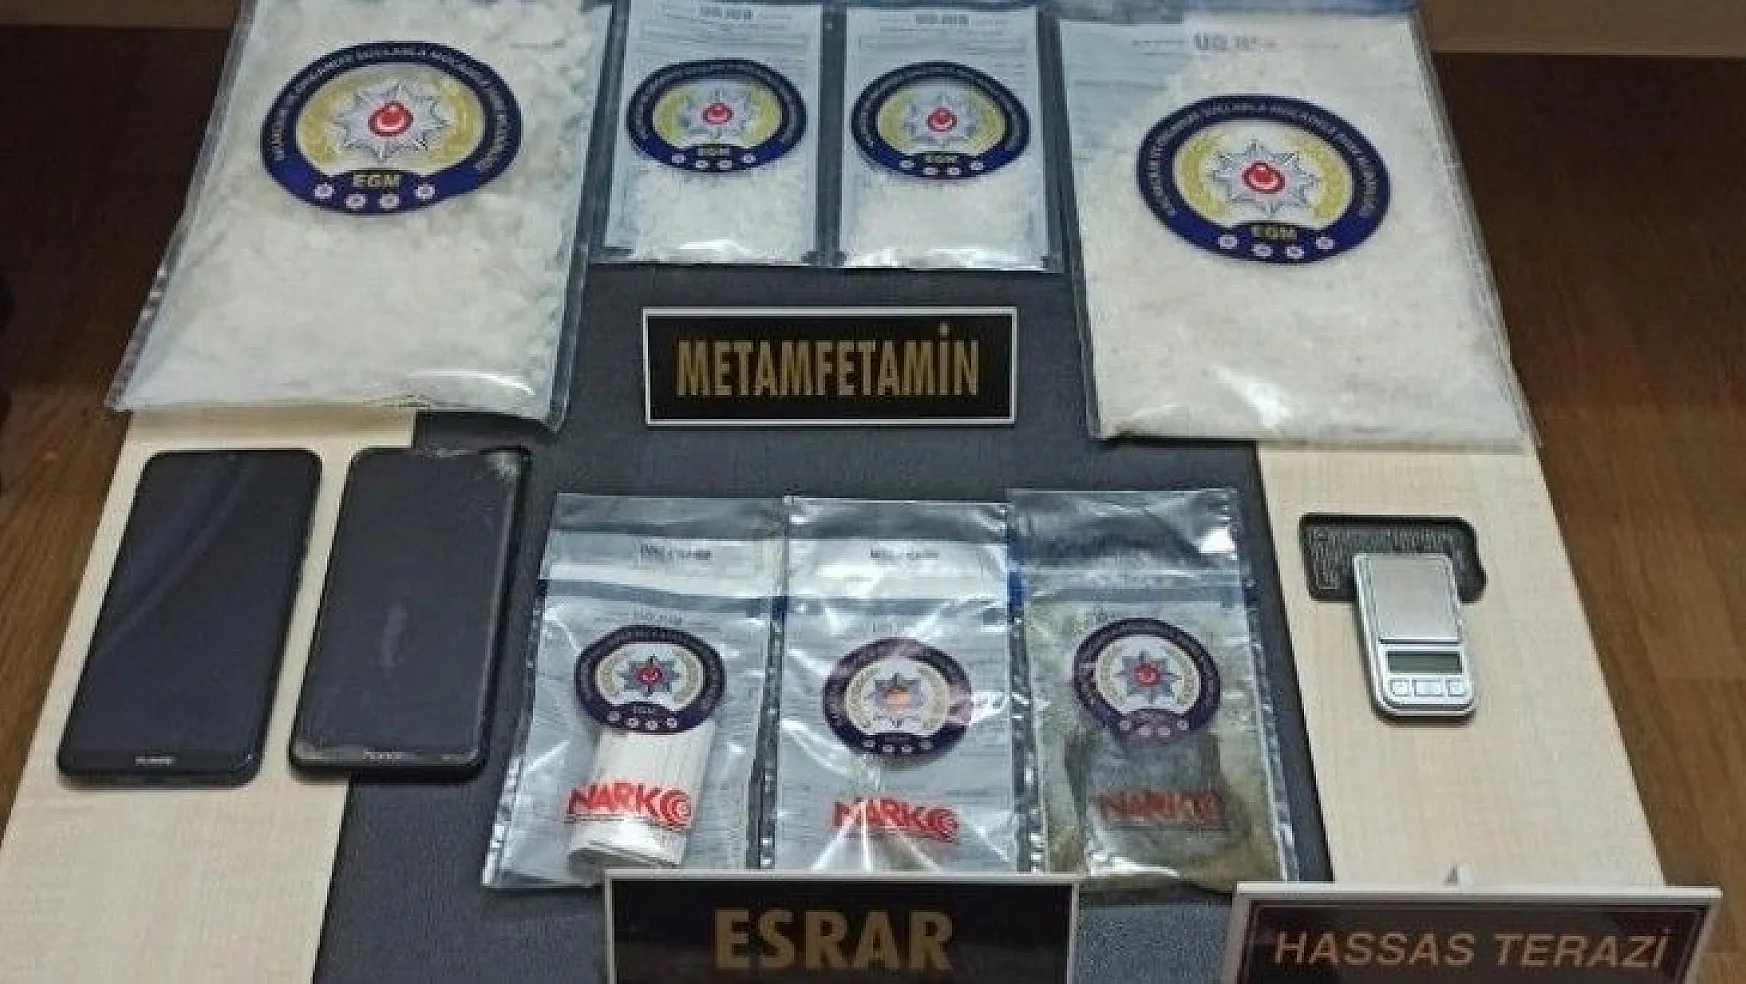 Milas'ta 1 kilo 620 gram metamfetamin ele geçirildi